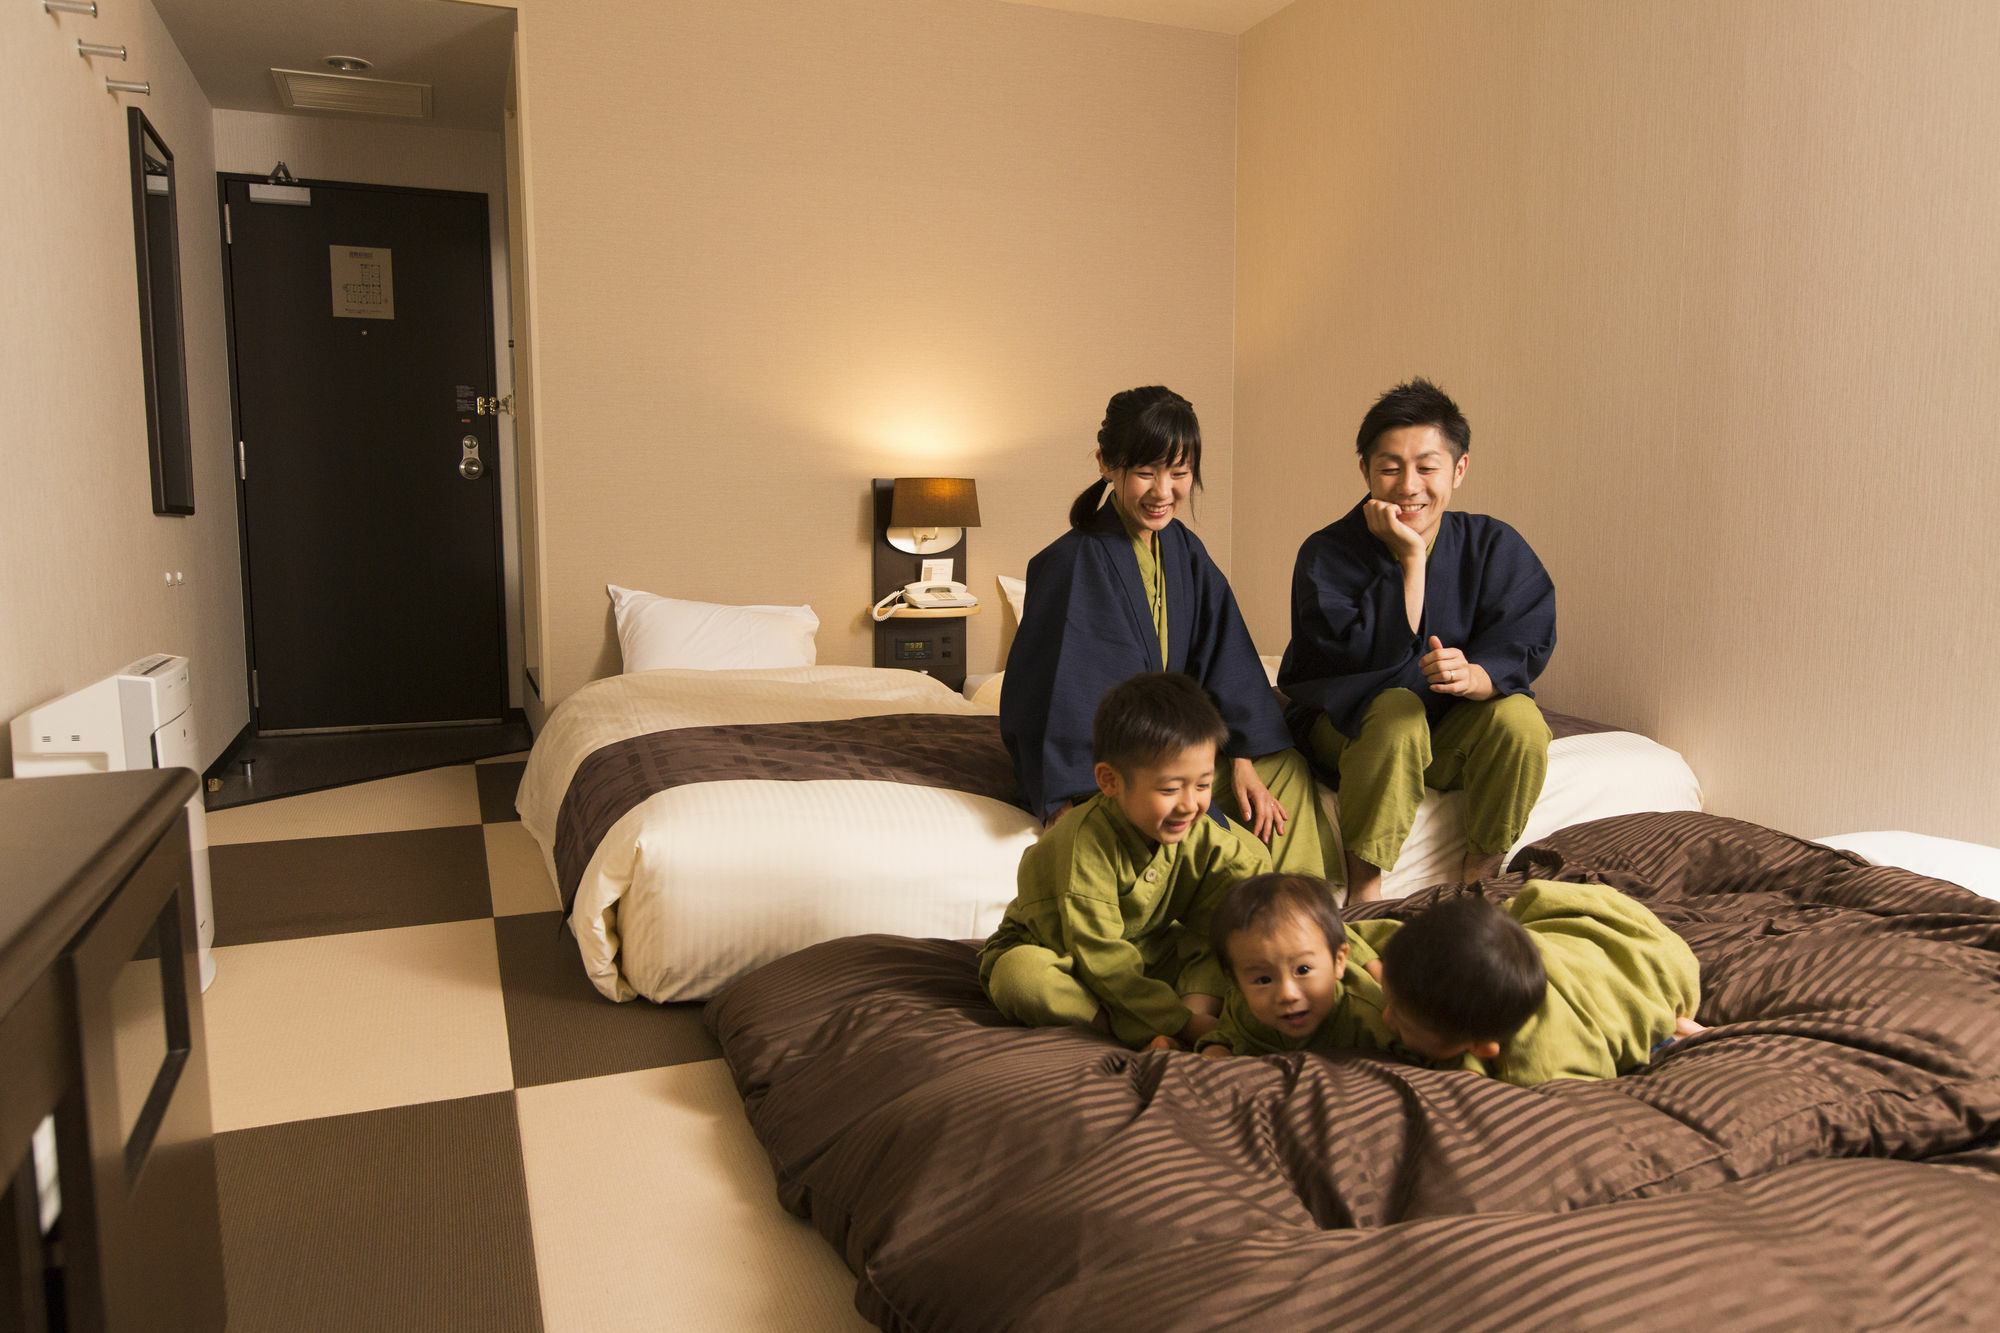 プレミアホテル -Cabin- 札幌 エクステリア 写真